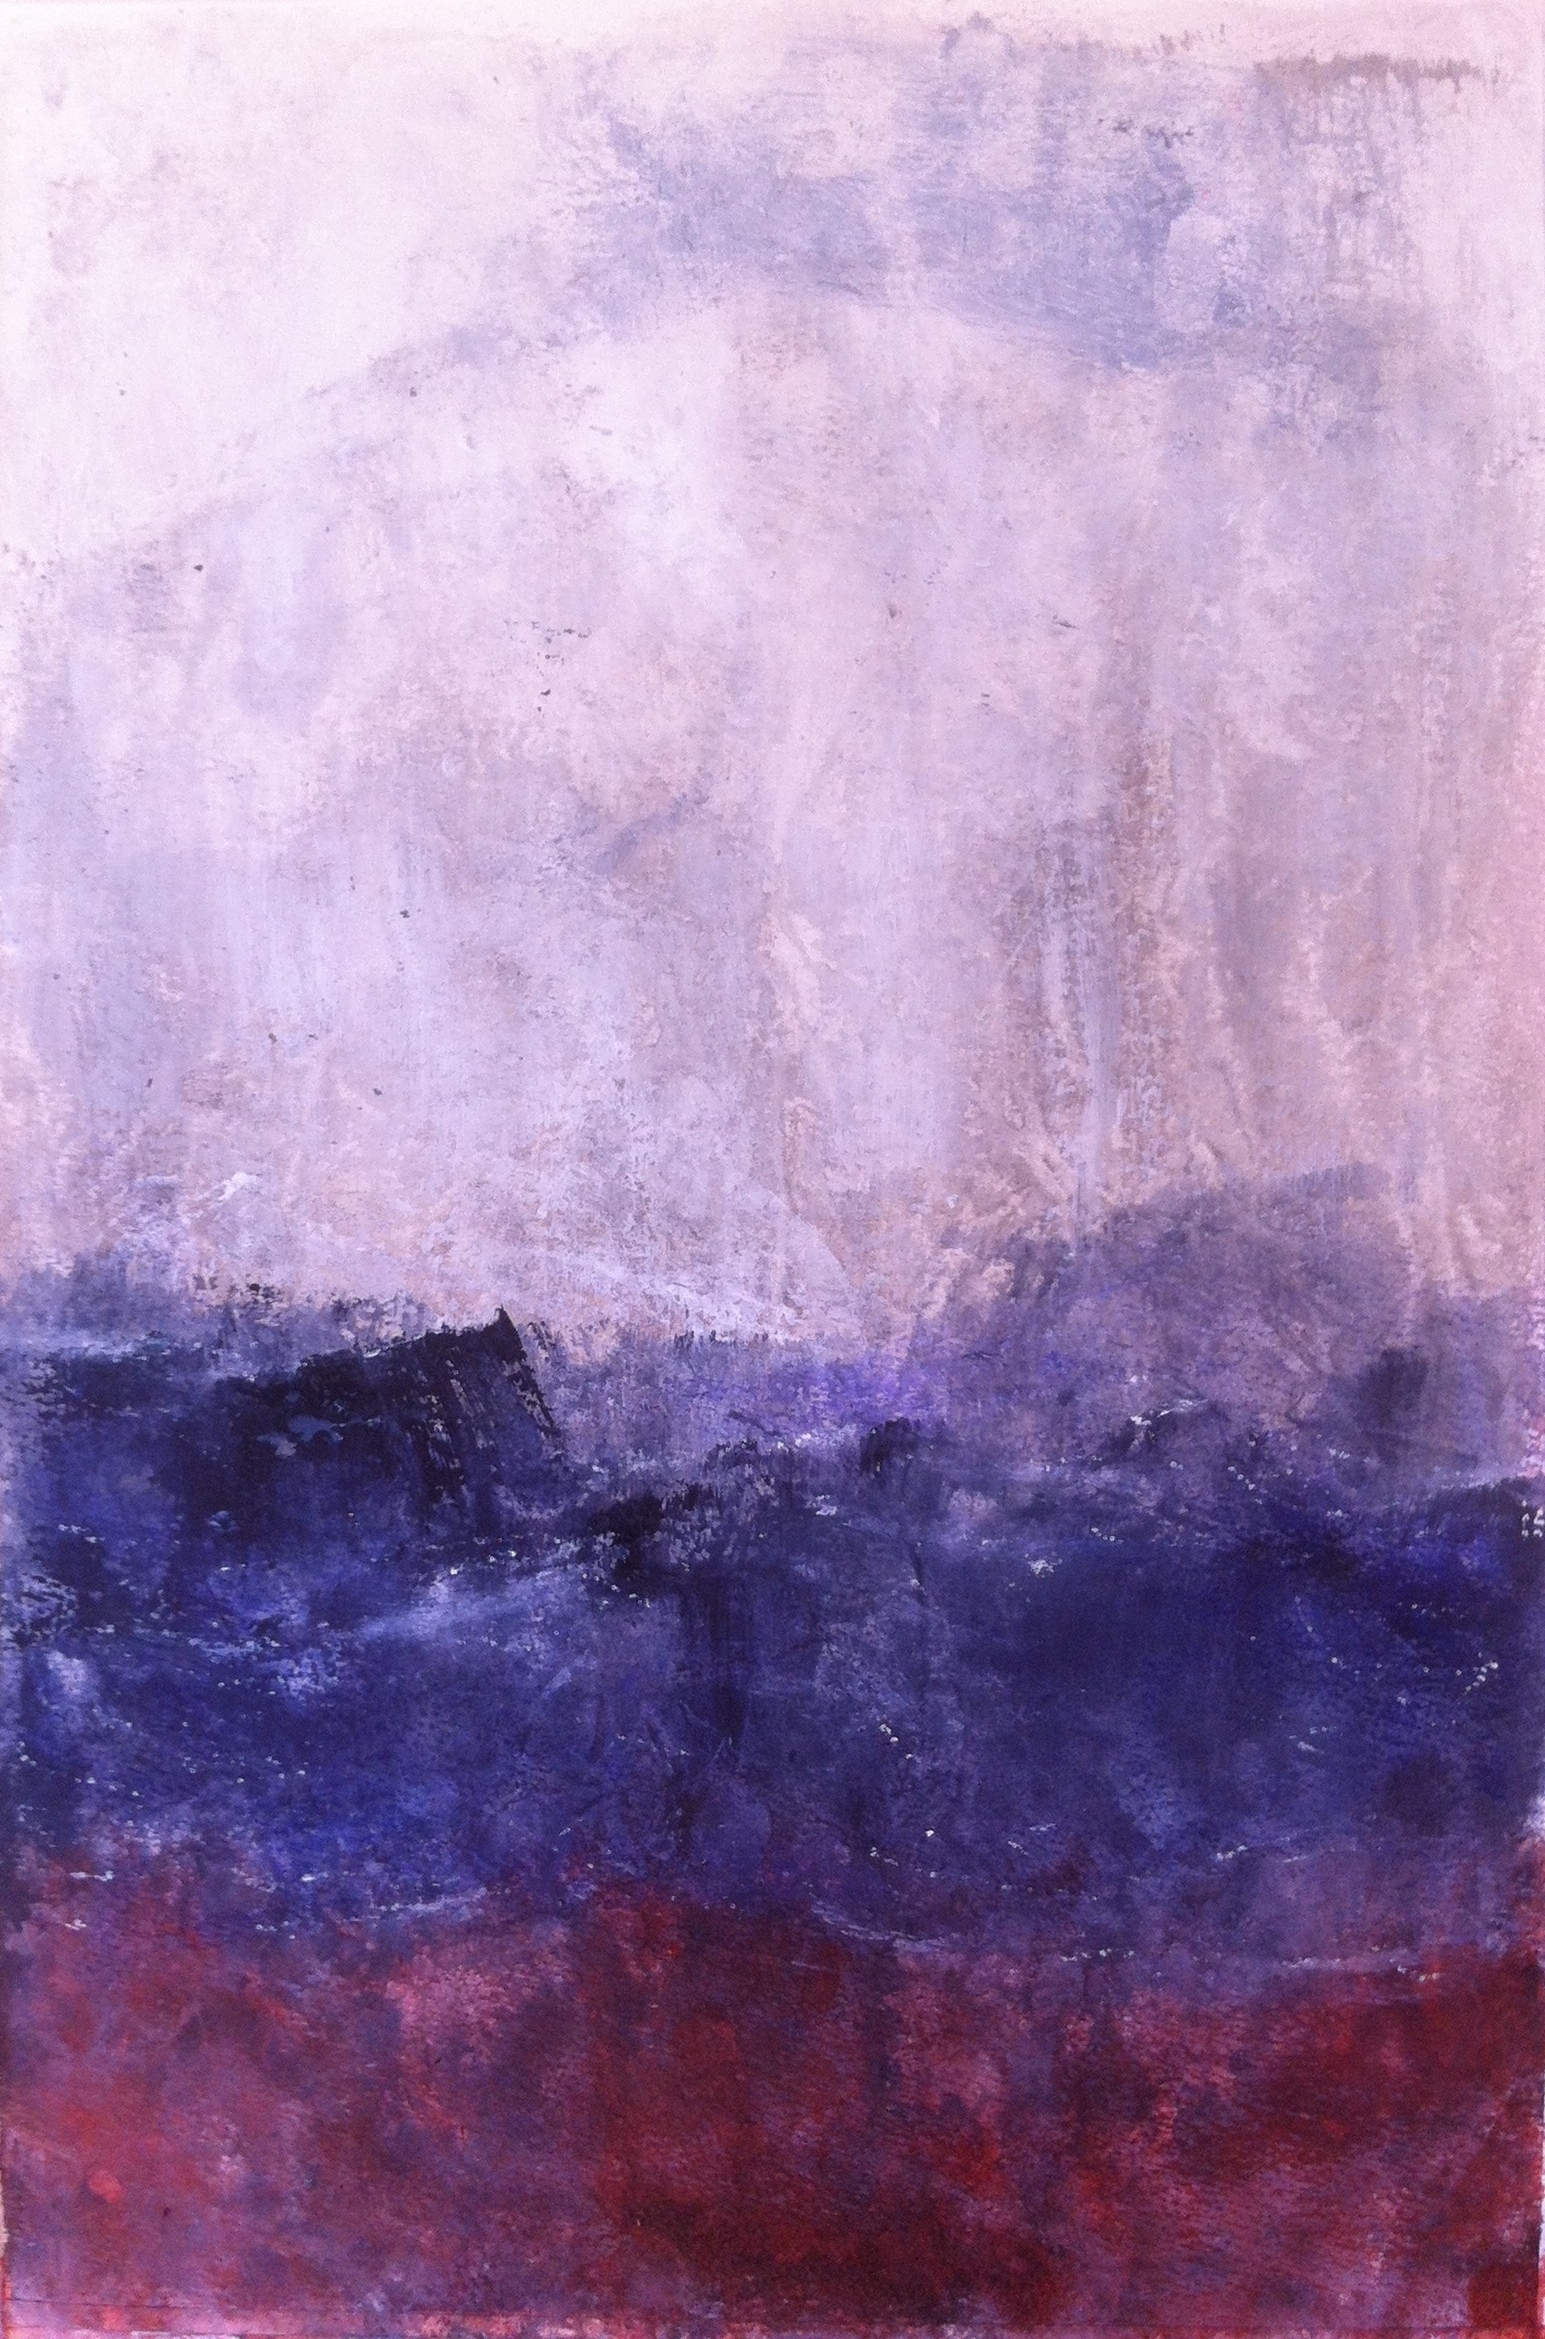 N° 1357 - Avis de tempête - Acrylique sur papier - 55 x 37 cm - 17 avril 2014